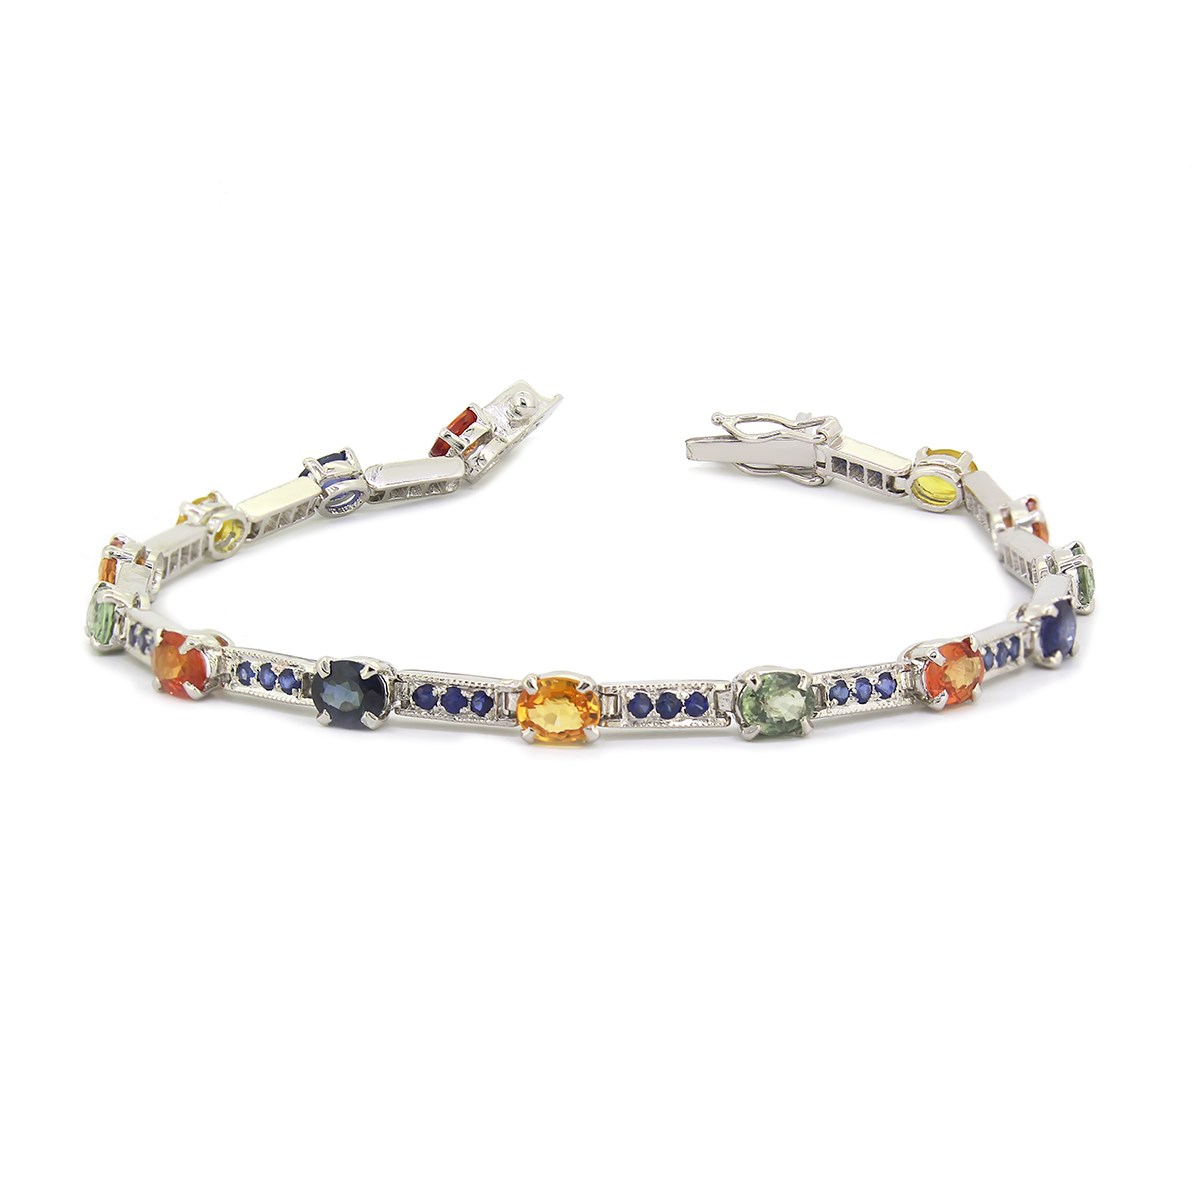 Bracelet Saphir Multicolore sur Argent 925 Rhodié - Aden Bijoux, Éclat et Raffinement